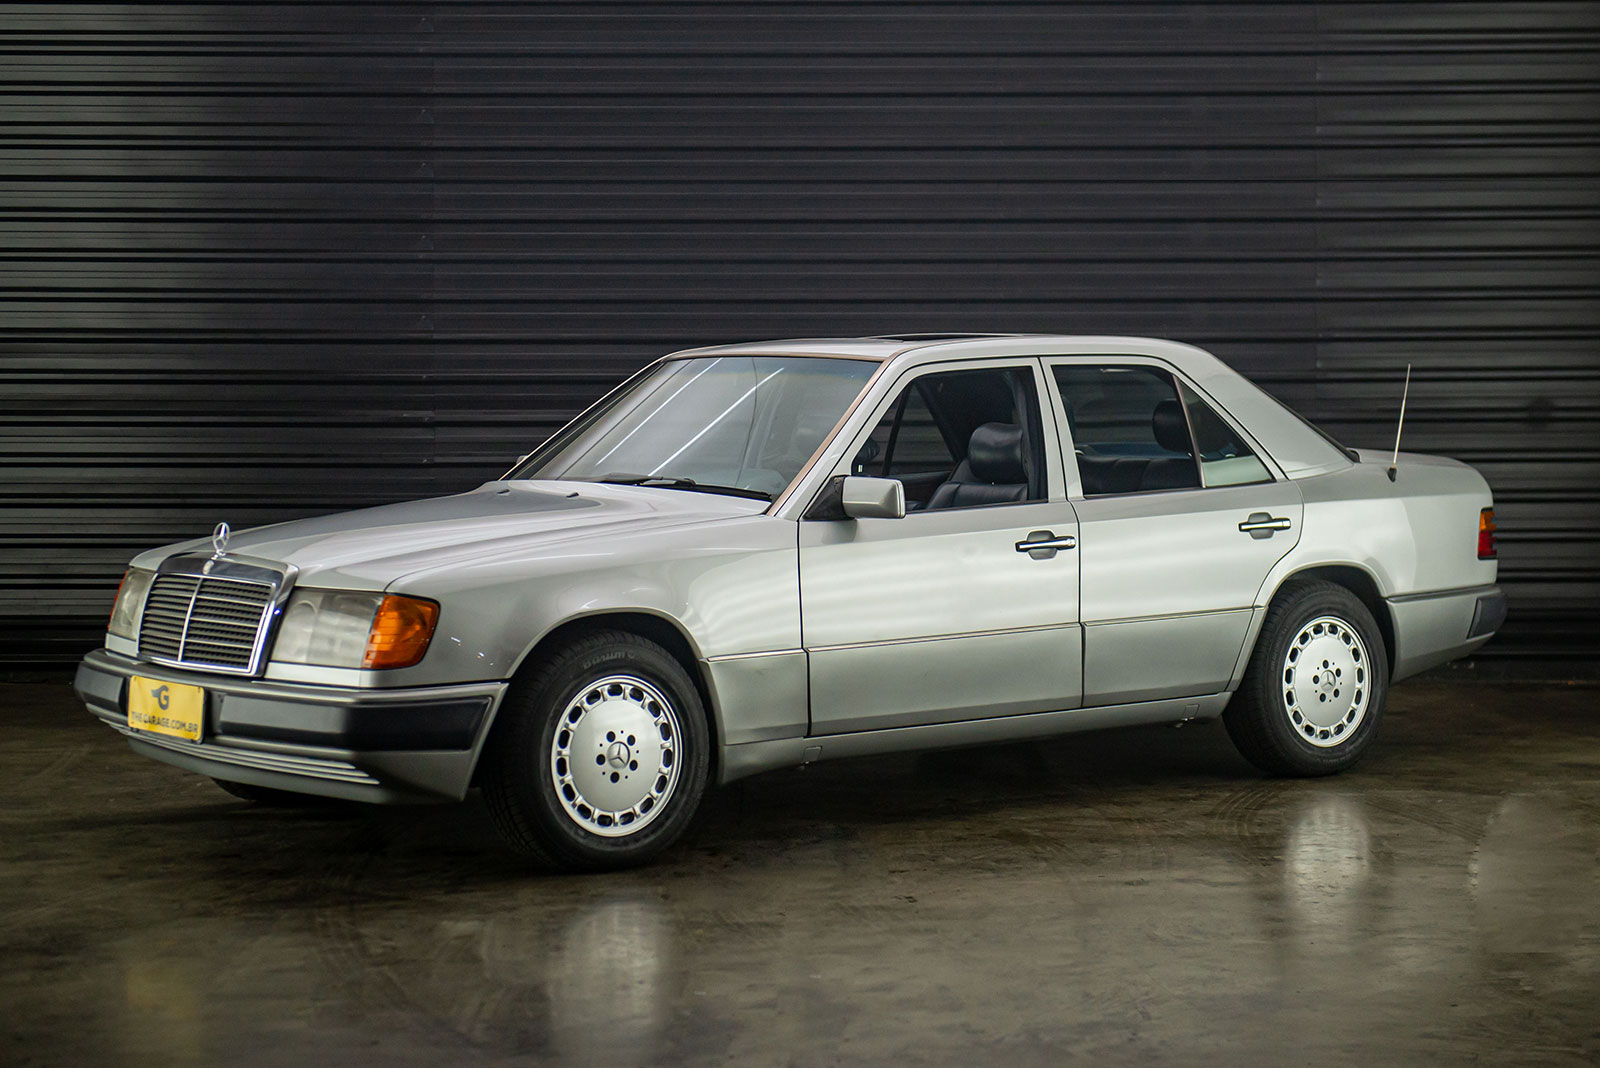 1991-mercedes-benz-300e24-a-venda-sao-paulo-sp-for-sale-the-garage-classicos-a-venda-loja-de-carros-antigos